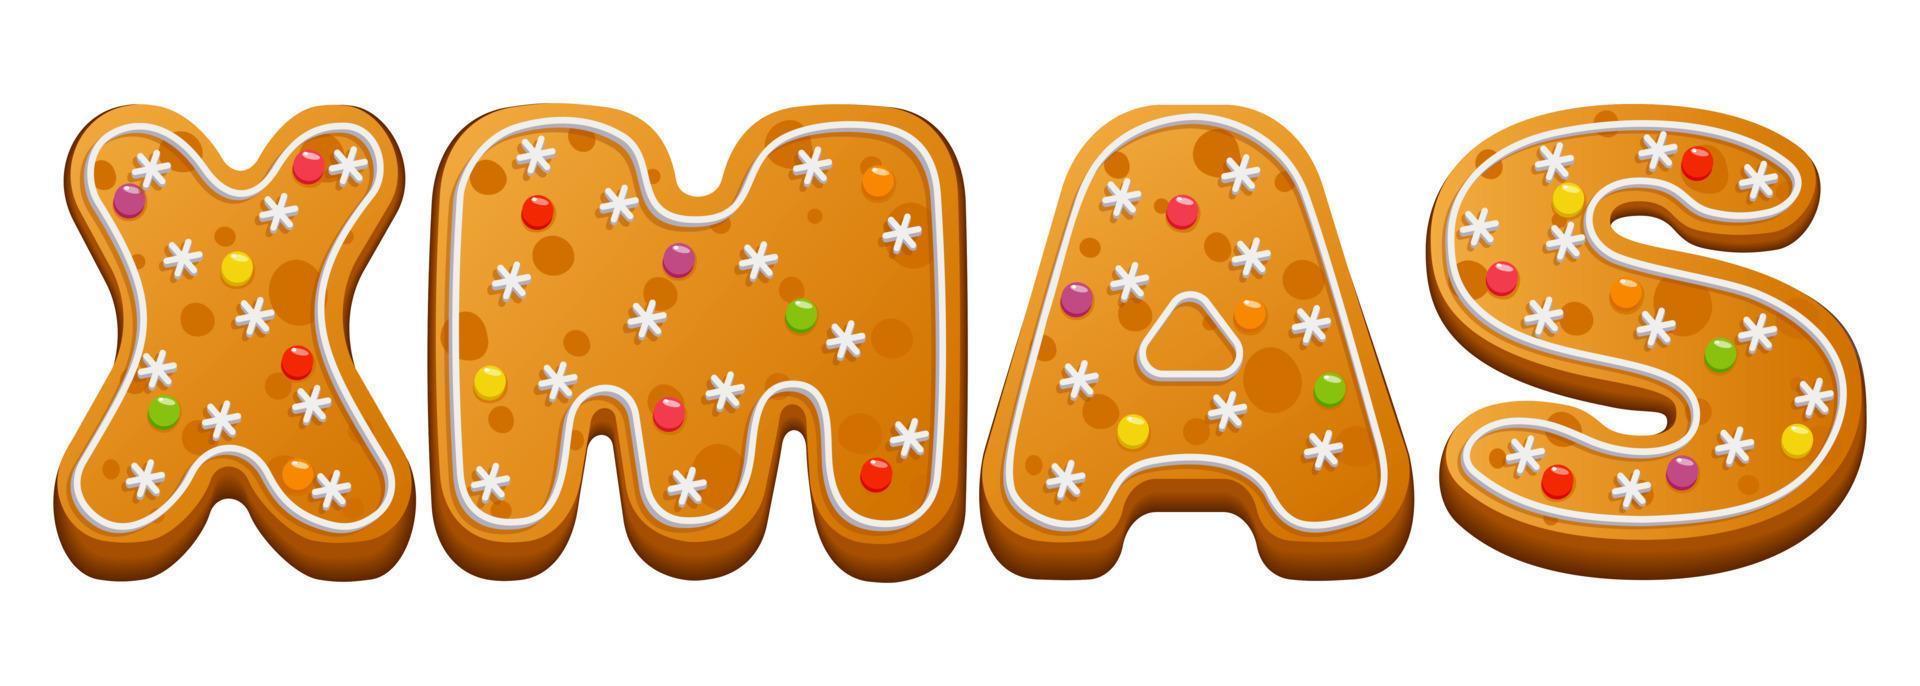 biscuit de pain d'épice de noël. carte postale, bannière avec l'inscription noël du pain d'épice d'hiver avec glaçage au sucre et marmelade. illustration vectorielle. vecteur